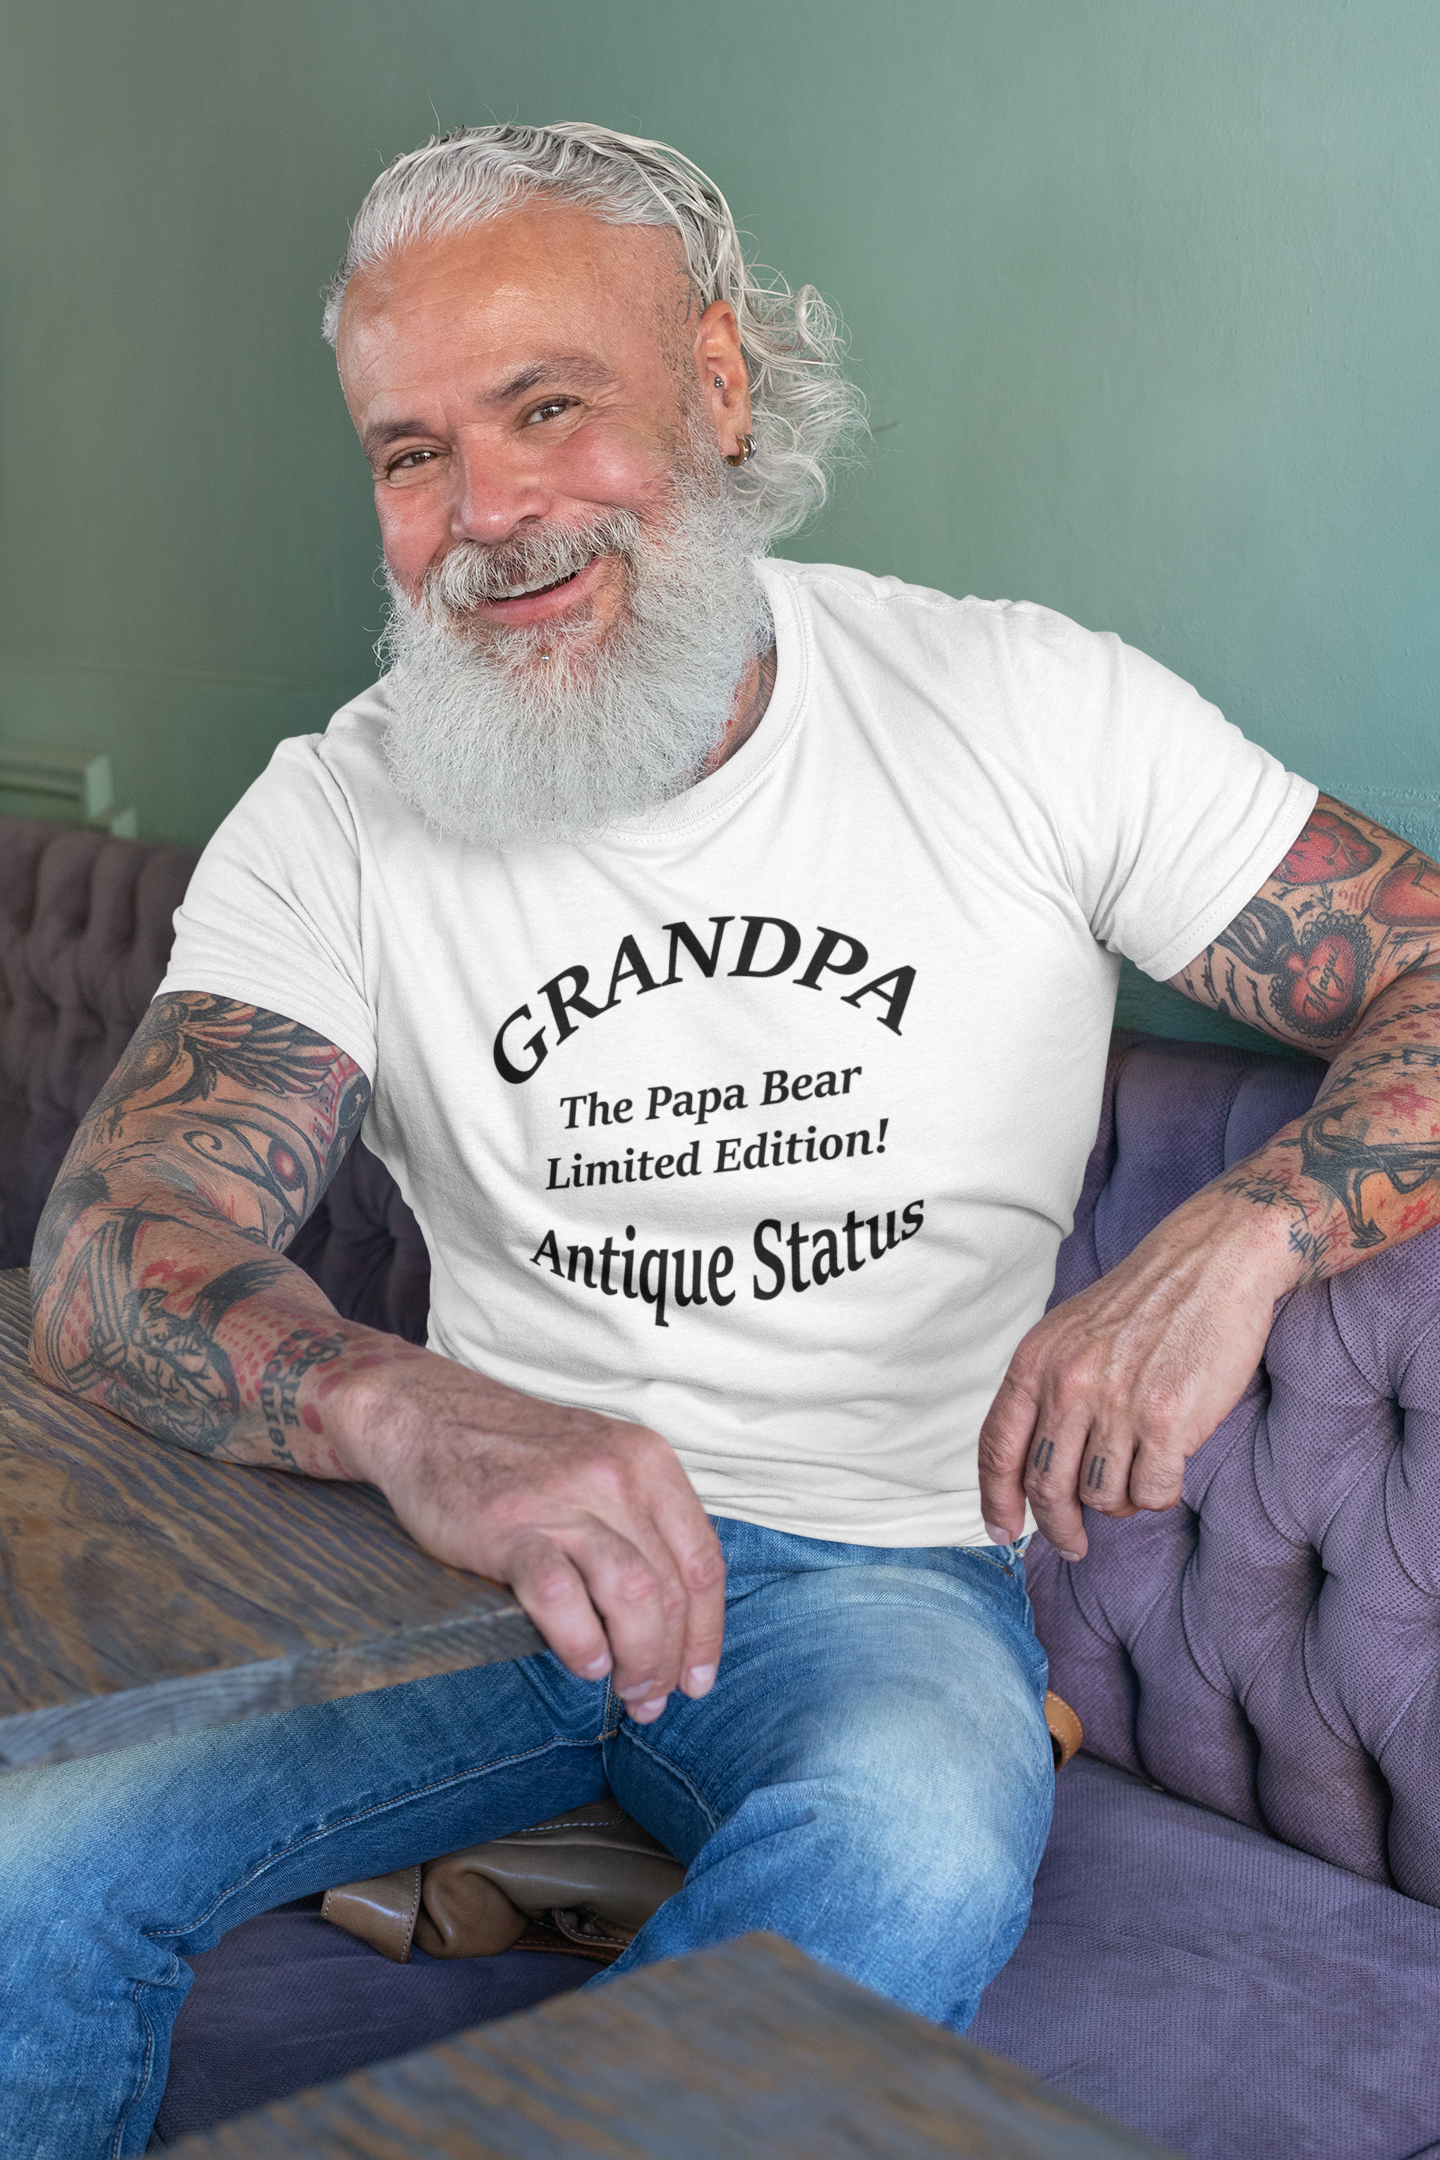 Antique Status (The Grandpa Tee)